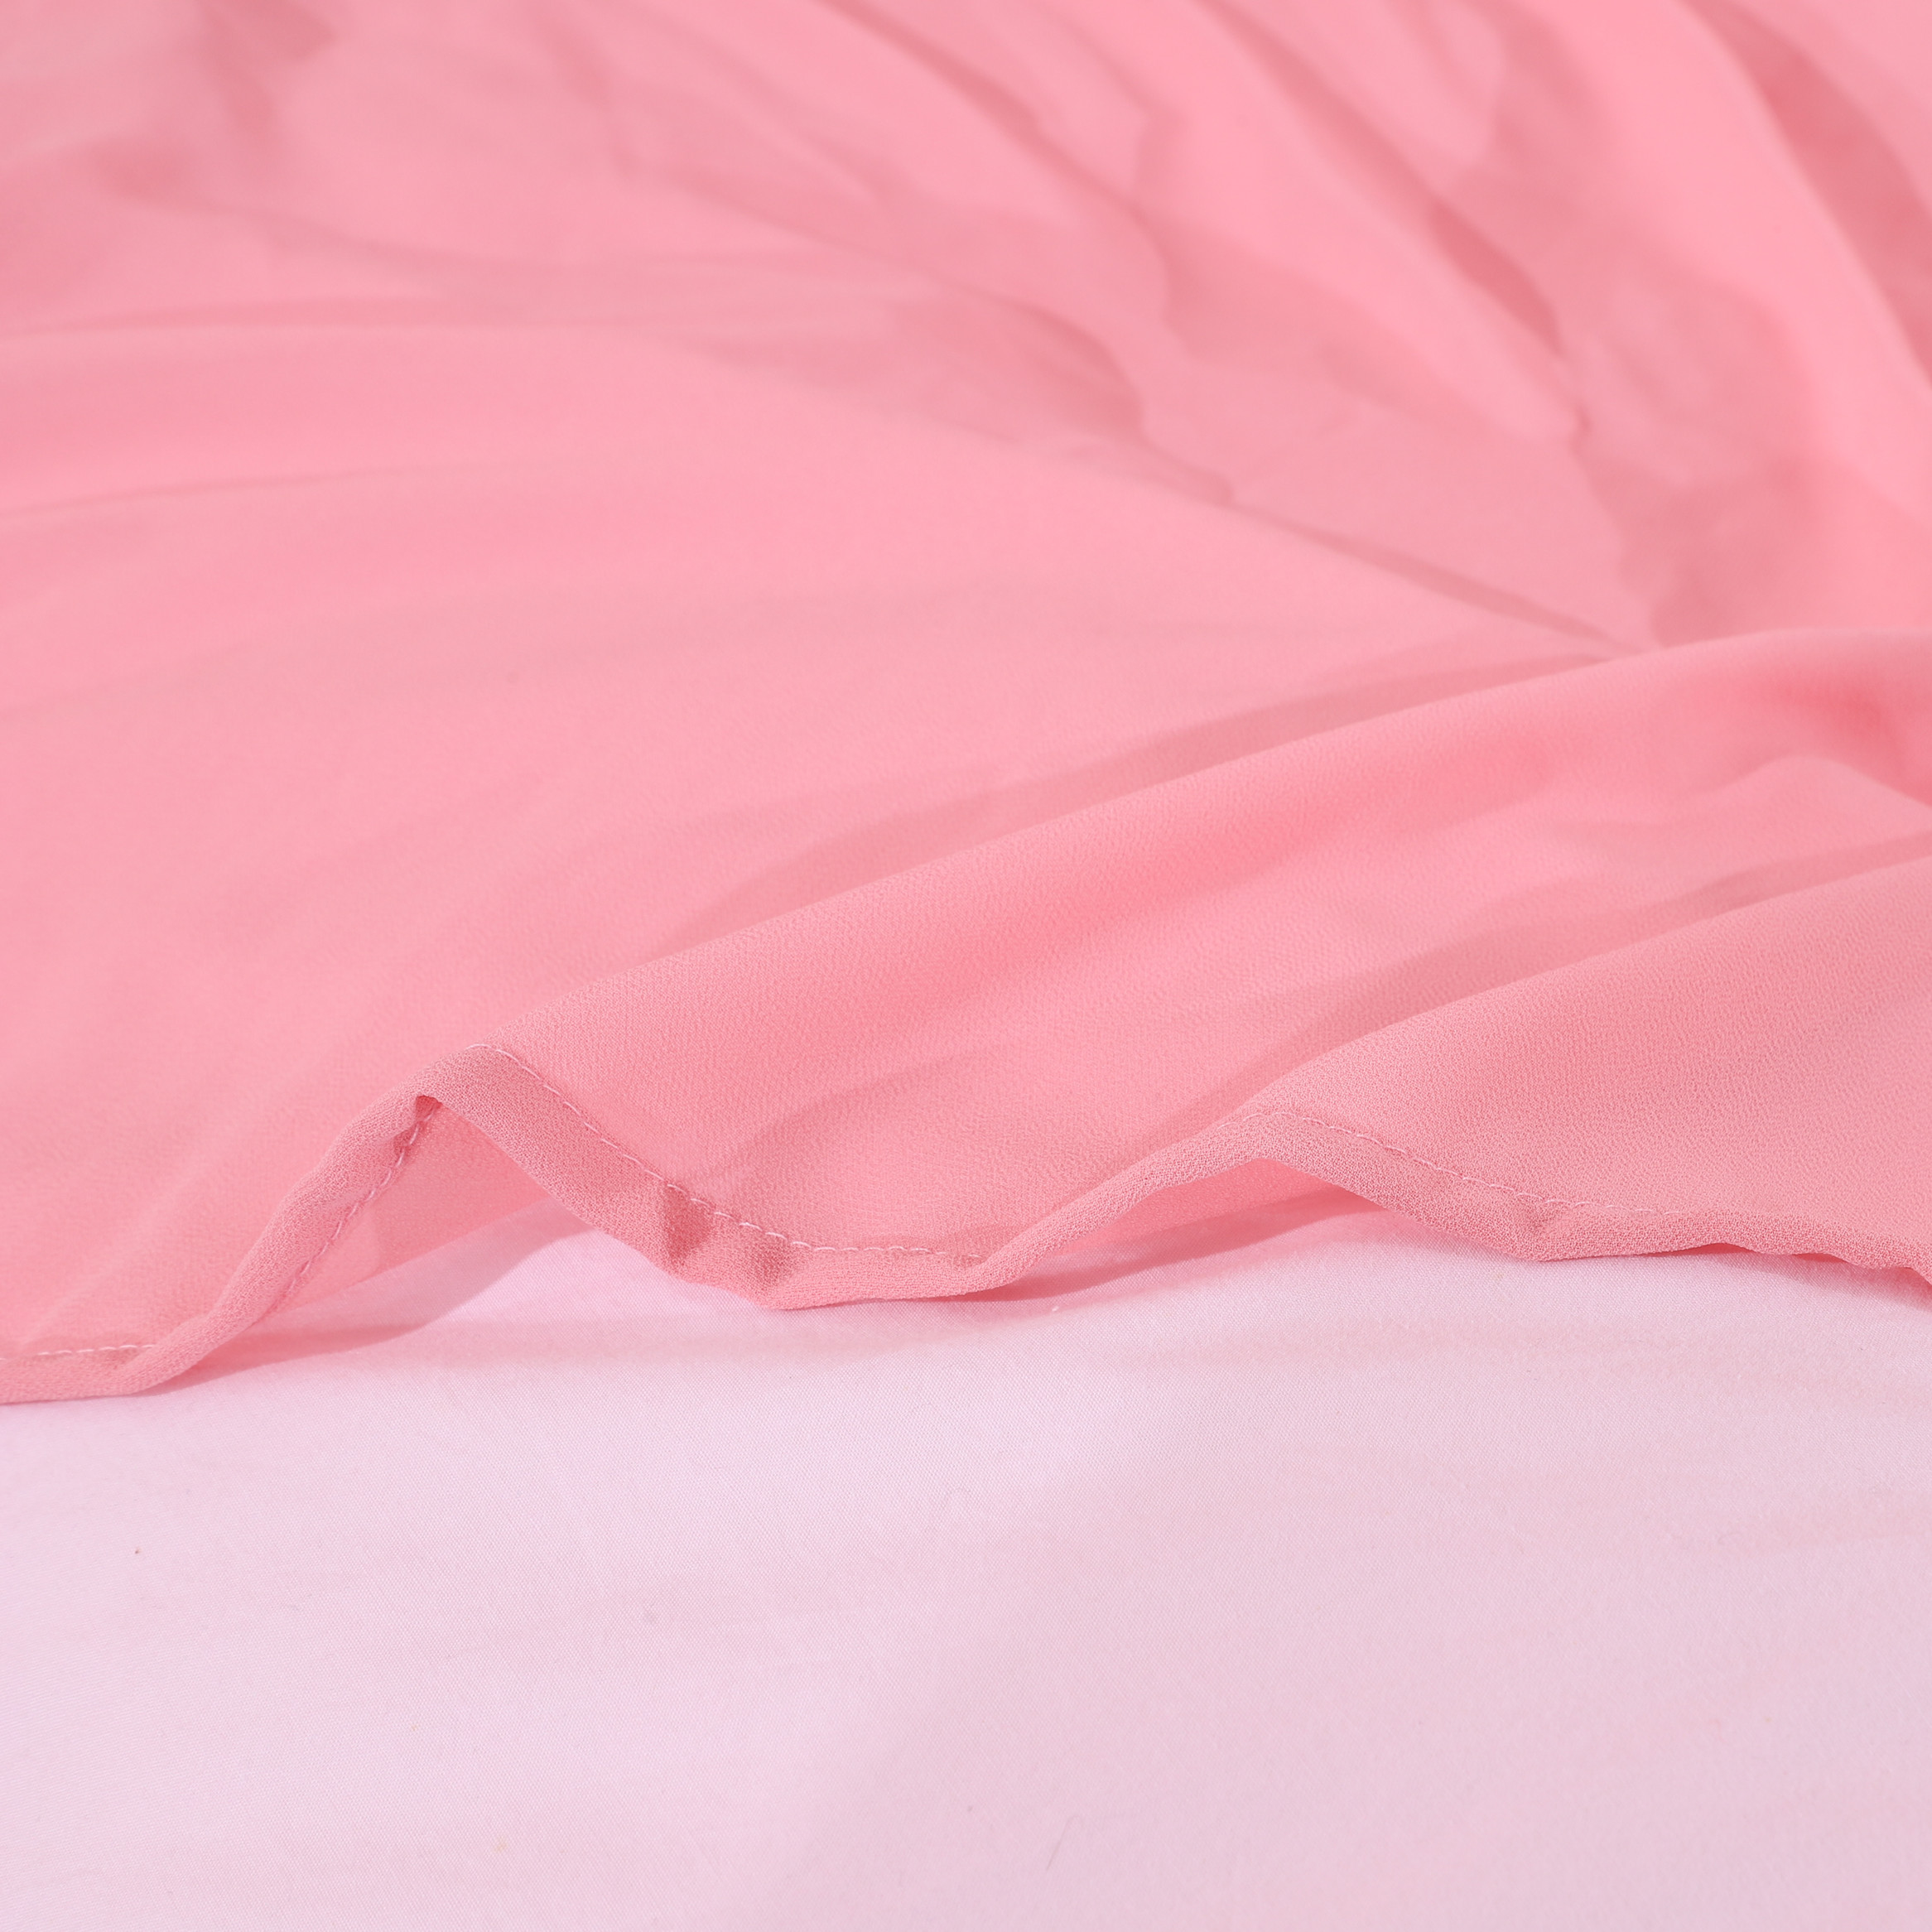 Toldo de cama colgante de encaje con forma de aguja rosada estilo princesa 2020 para niños